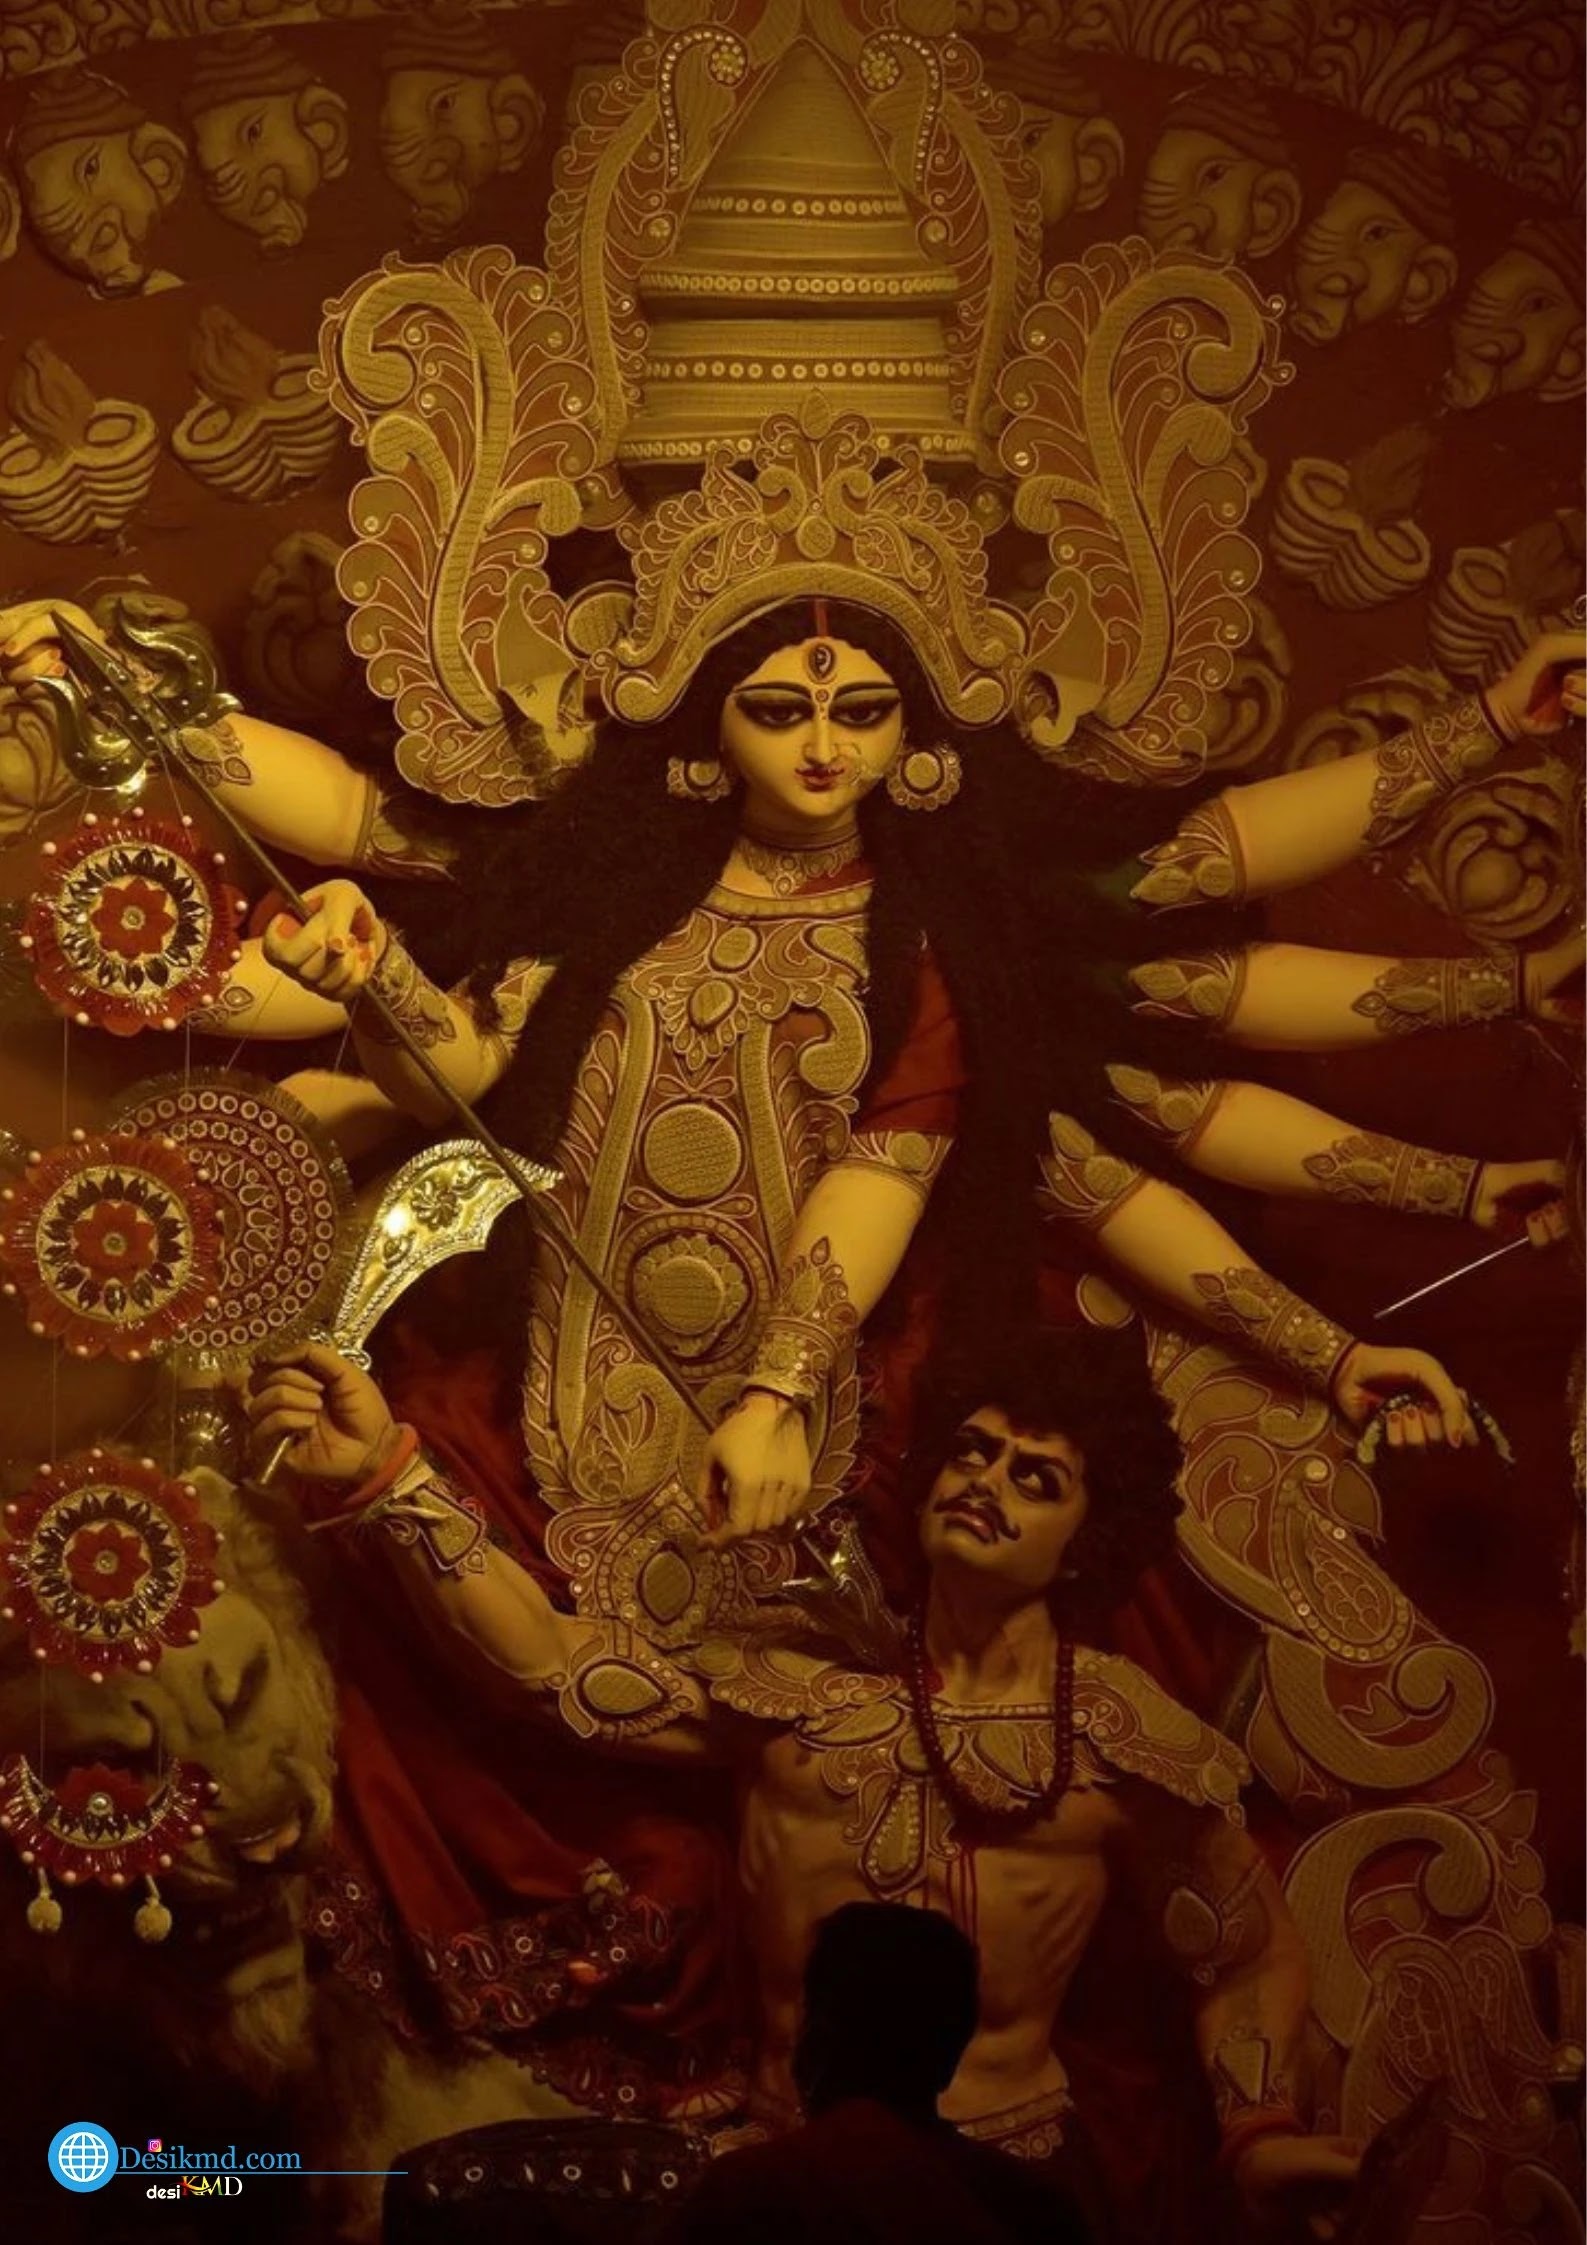 Maa Durga Photo Gallery Wallpaper Free | Maa Durga Images Full HD |Beautiful Images of Maa Durga| #Wallpaper #MaaDurga |Desikmd